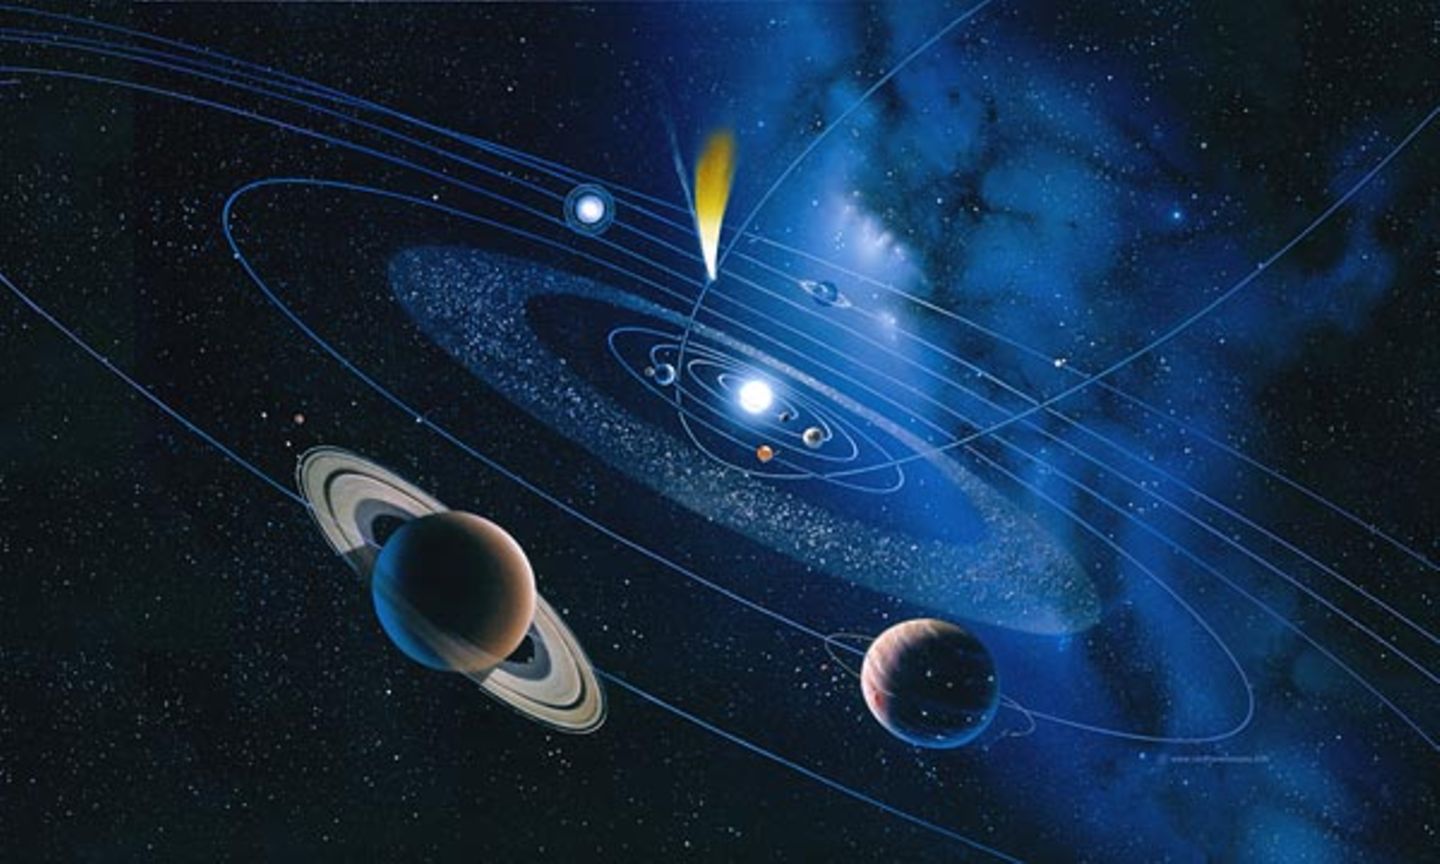 Zahlreiche Himmelskörper kreuzen die Bahn der Erde. In der Grafik ist ein Komet mit dem stets von der Sonne abgewandten Schweif gerade dabei, ins innere Sonnensystem vorzustoßen